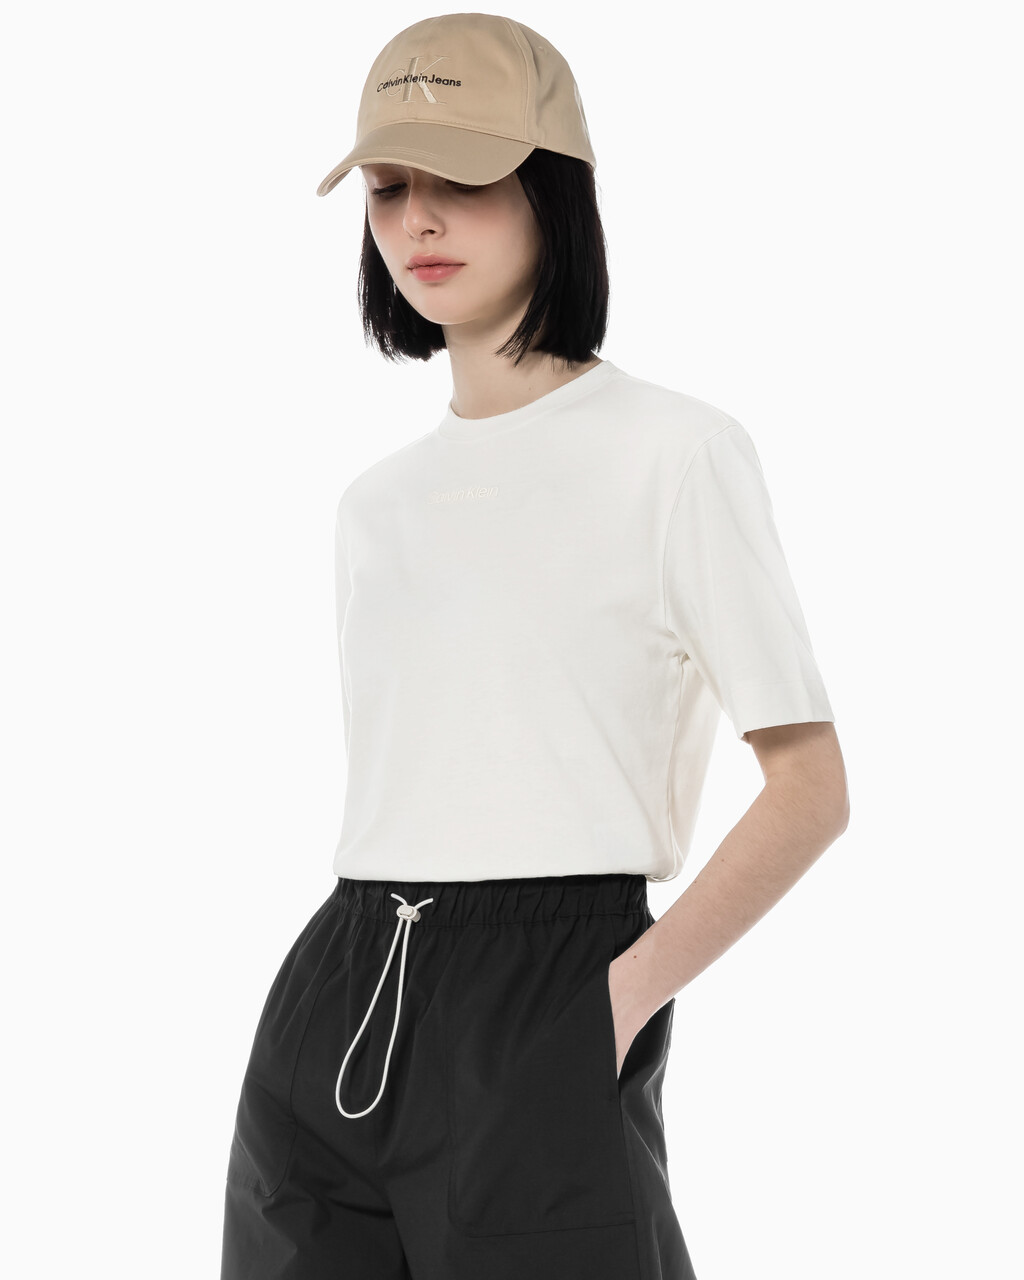 Buy 여성 릴렉스 핏 에센셜 반팔 티셔츠 in color WHITE